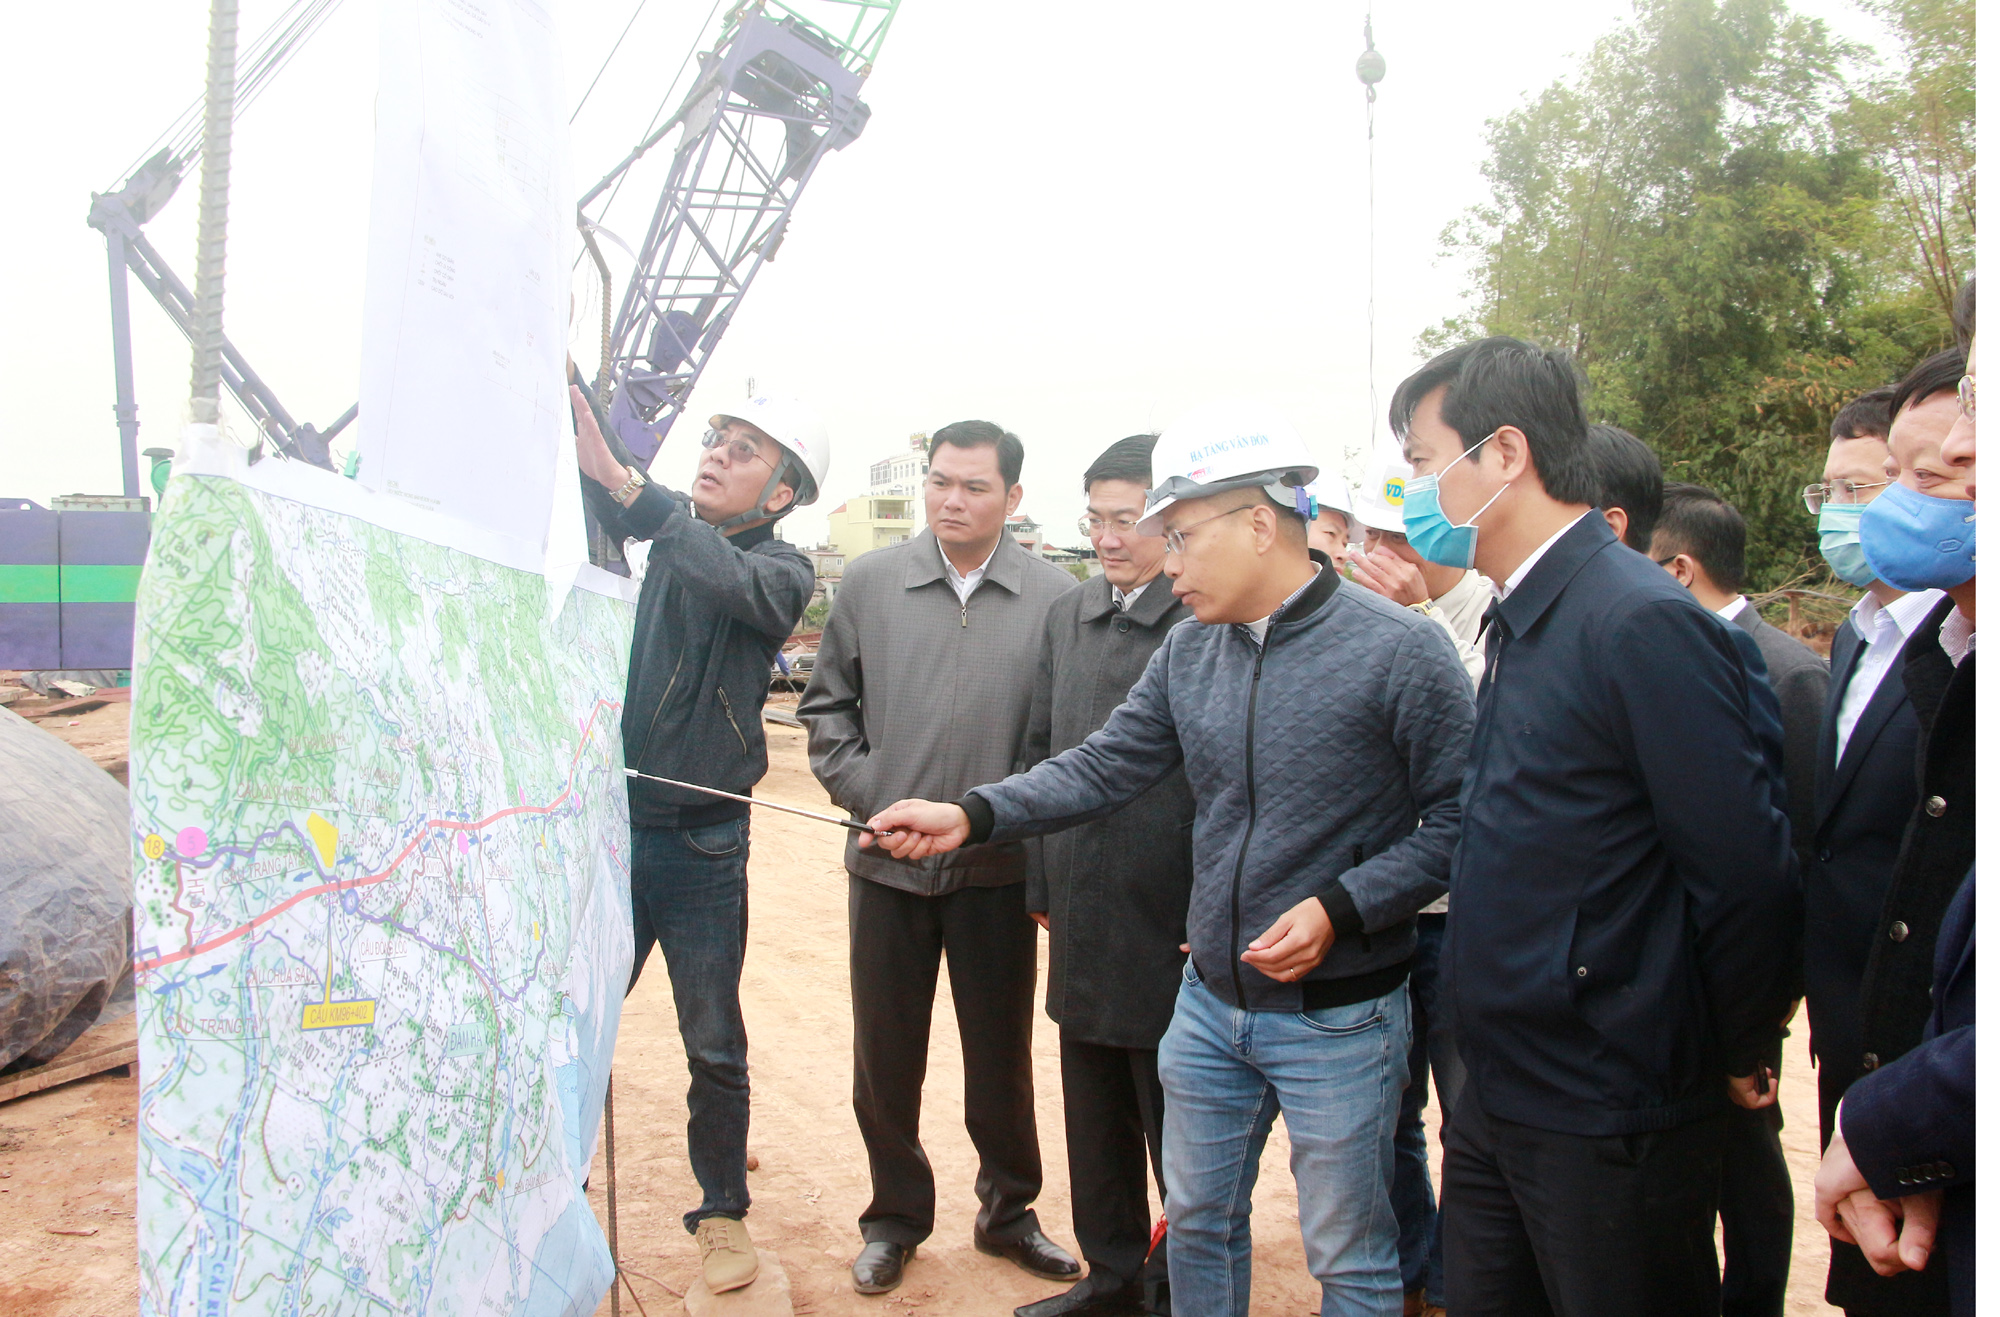 Đồng chí Nguyễn Tường Văn, Chủ tịch UBND tỉnh, nghe đơn vị thi công báo cáo tiến độ thi công cao tốc Vân Đồn - Móng Cái.